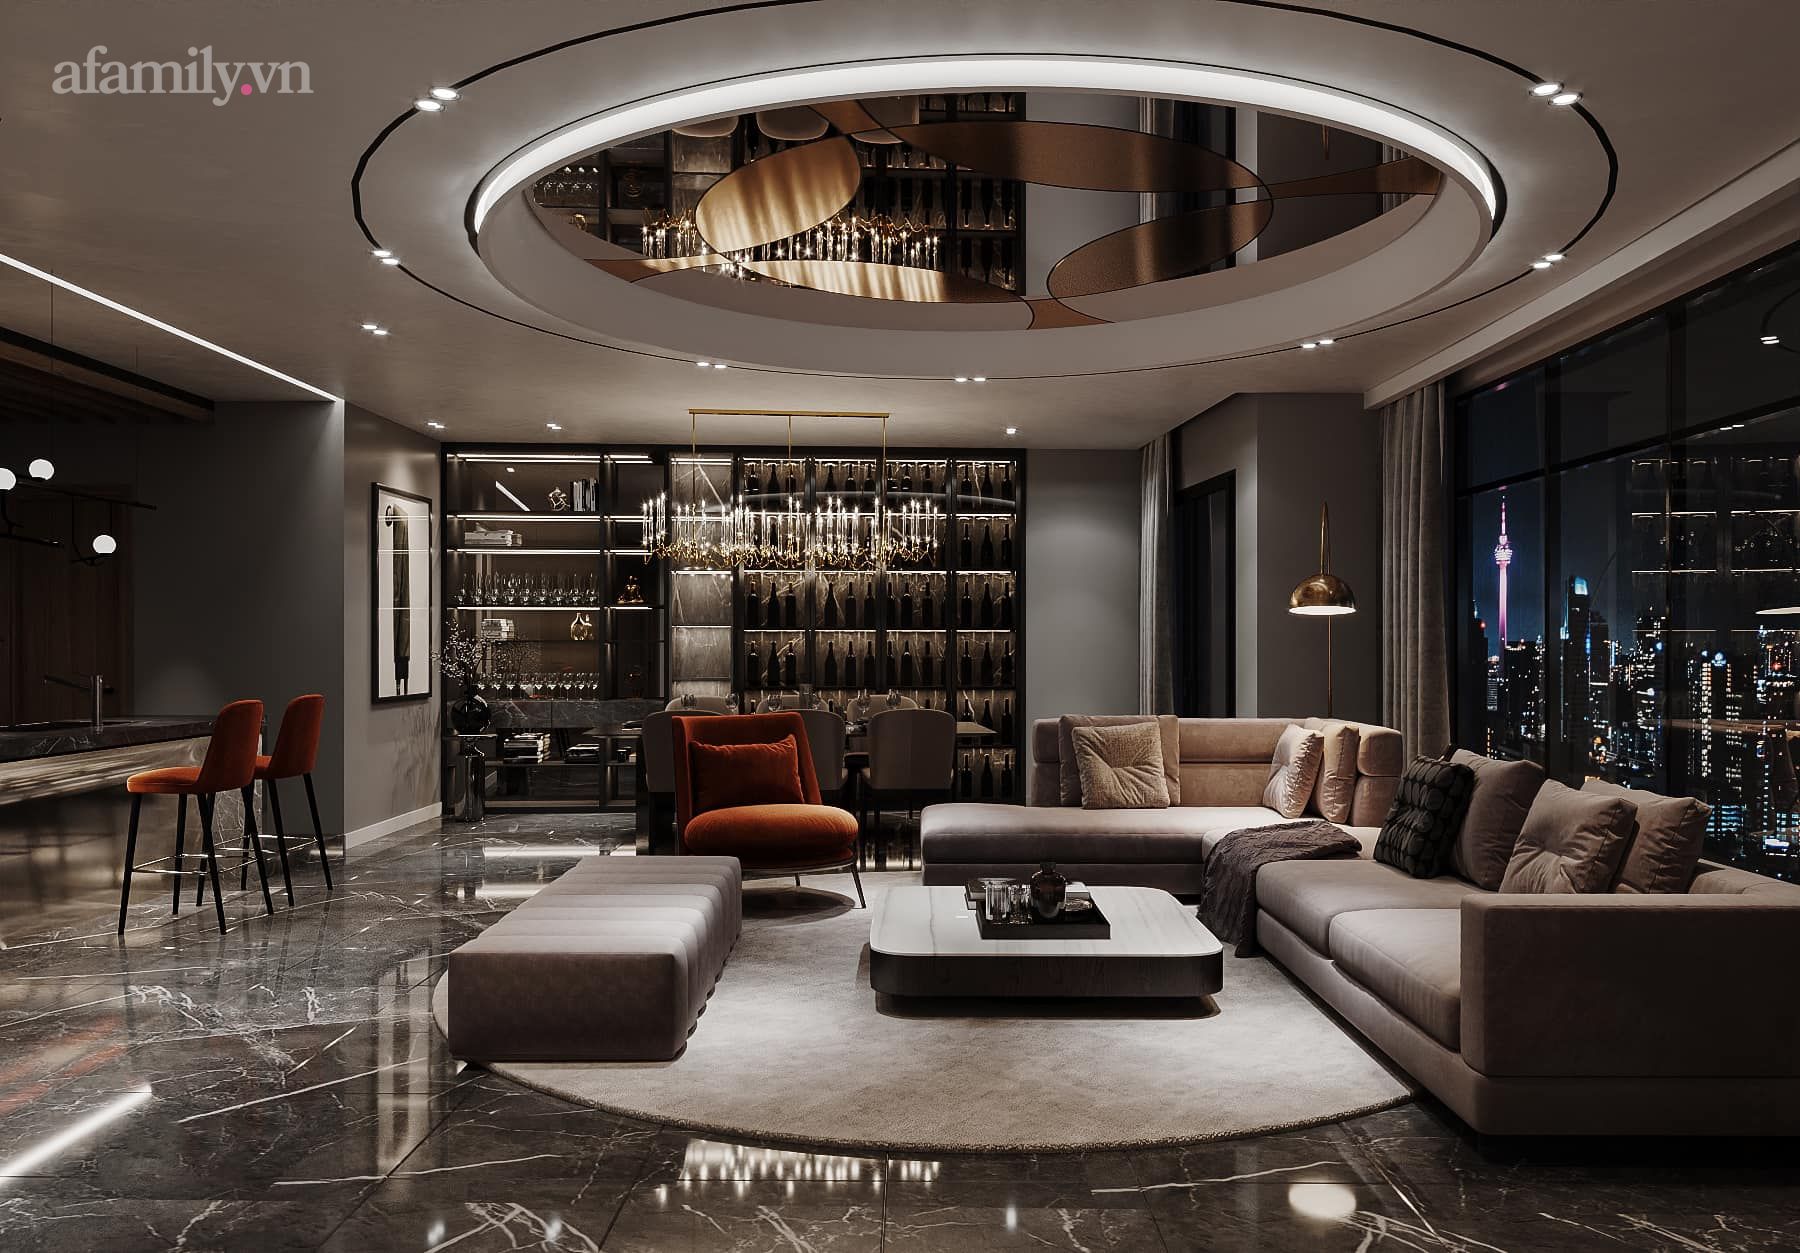 Căn penthouse duplex của nữ CEO Hà Nội bao trọn view sông Hồng, thiết kế luxury hiện đại tone chủ đạo nâu đen cực huyền bí - Ảnh 3.